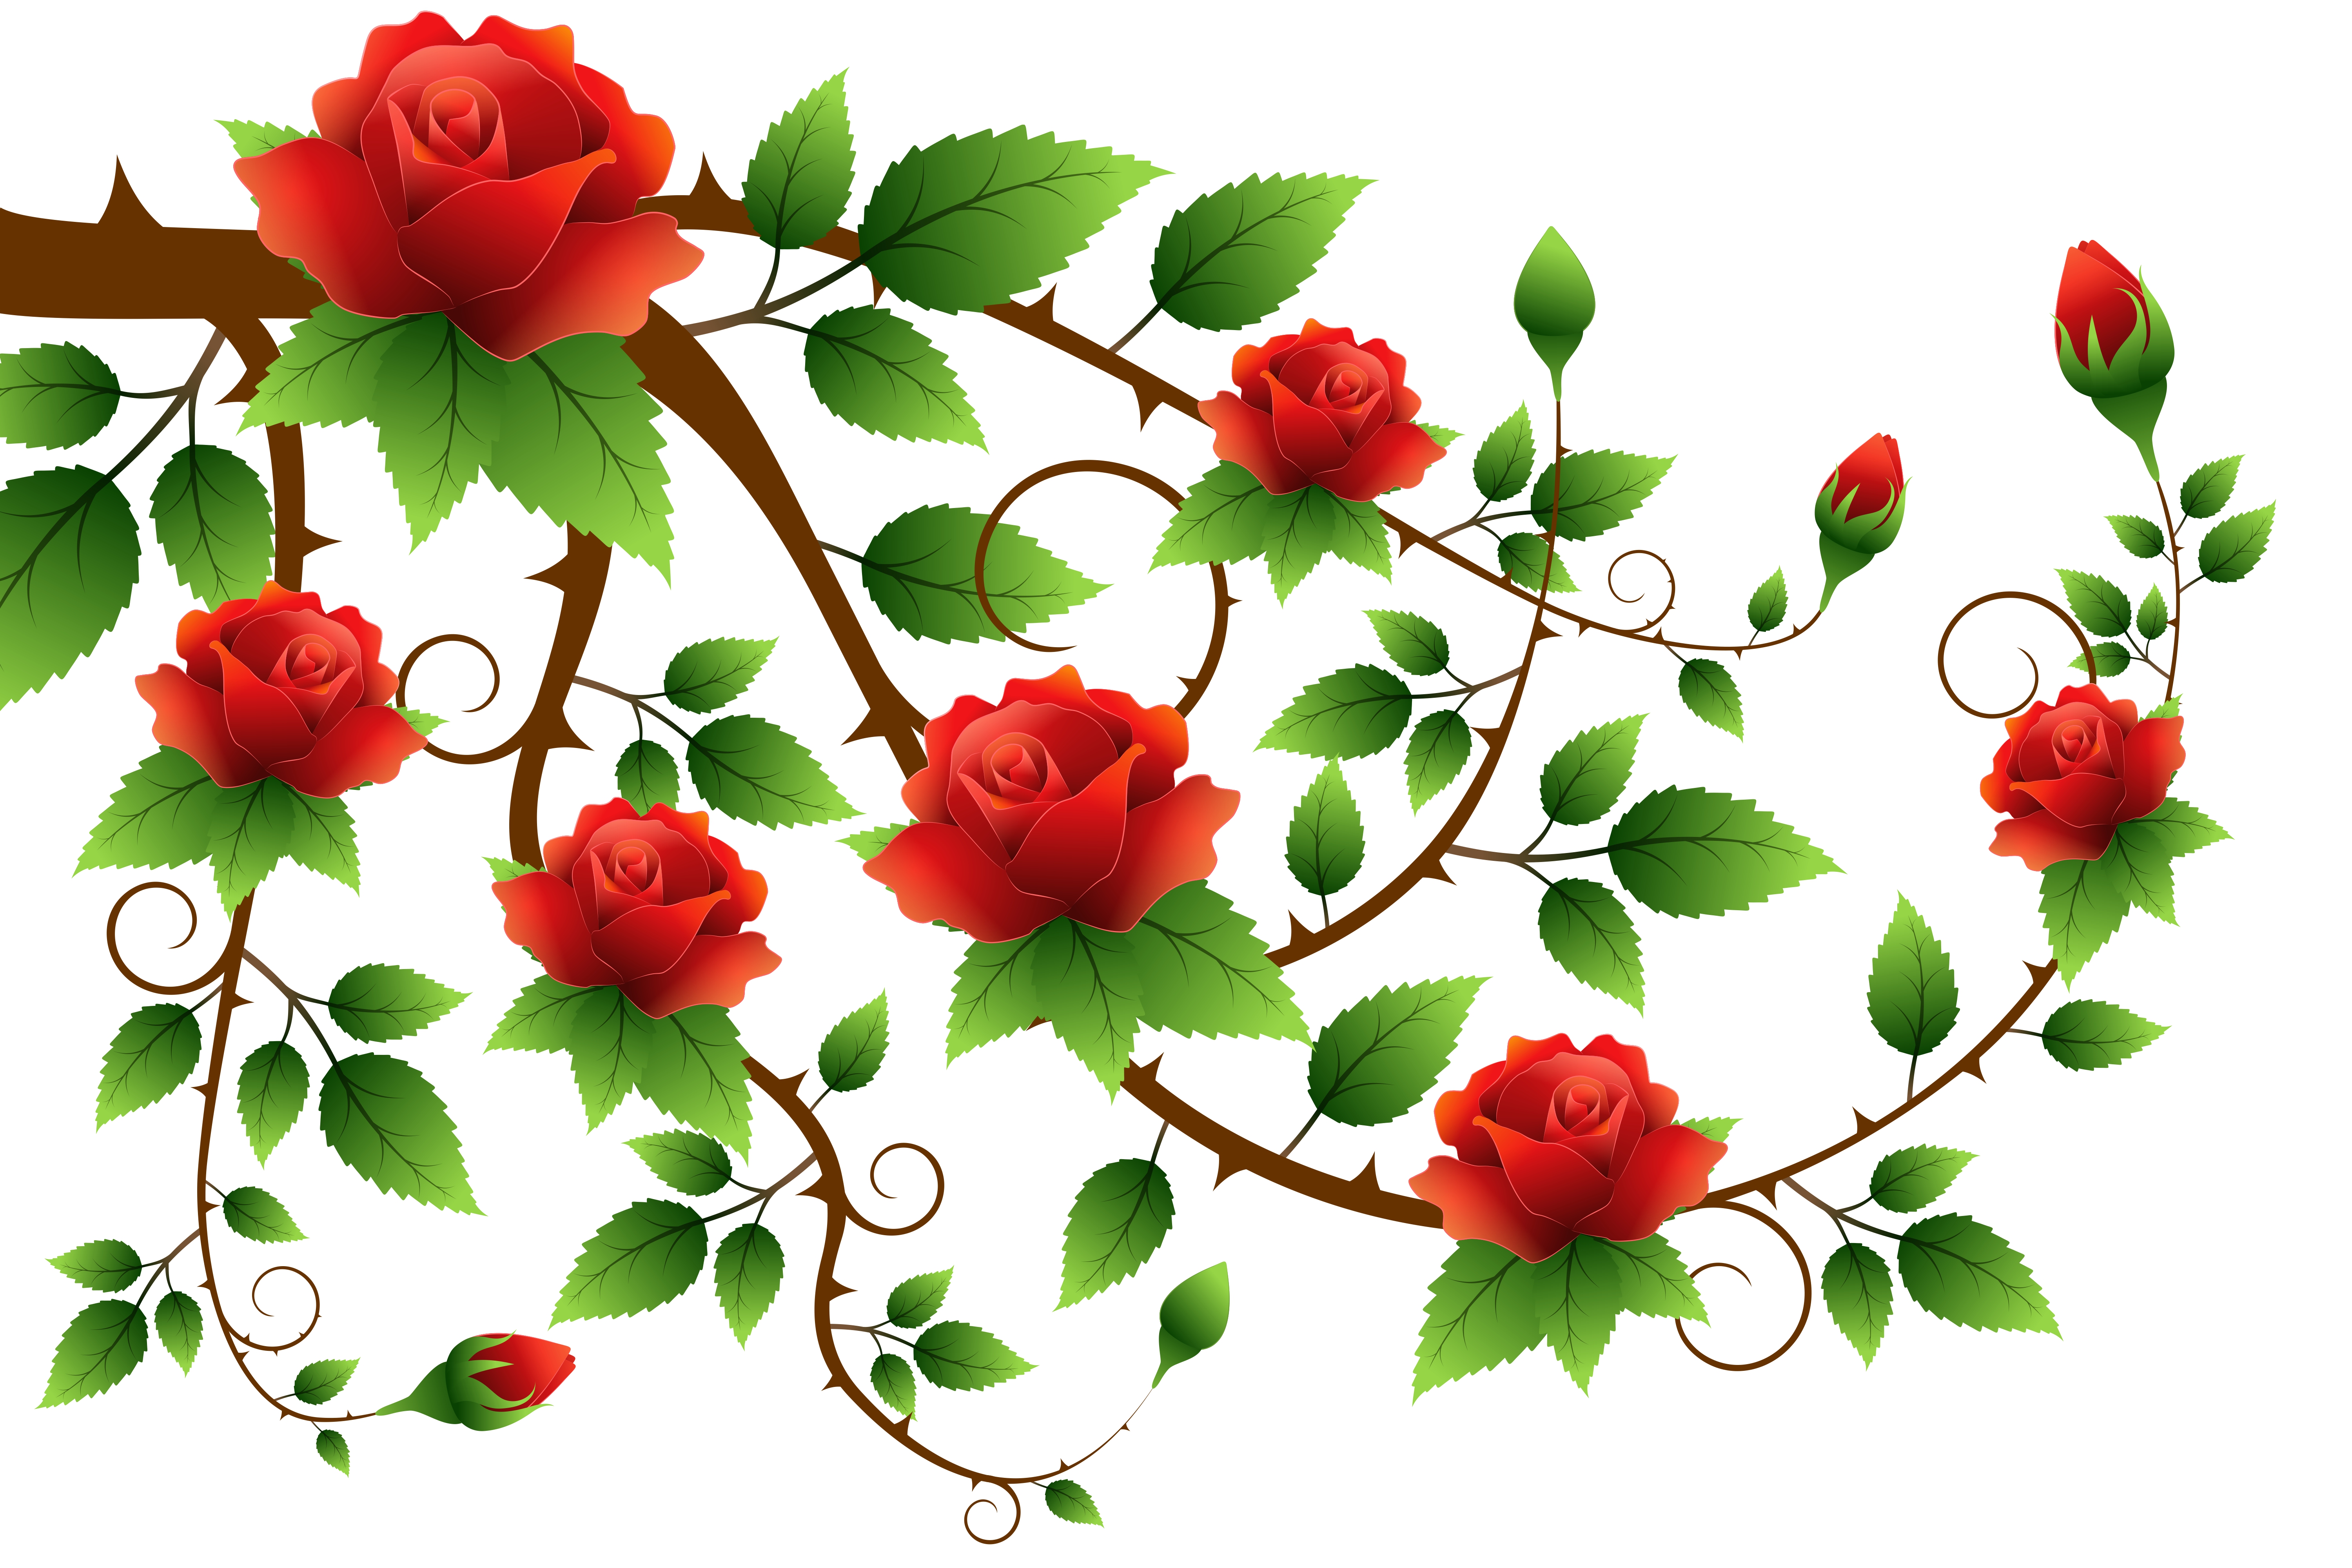 red rose, rose, artistic, leaf, red, vine